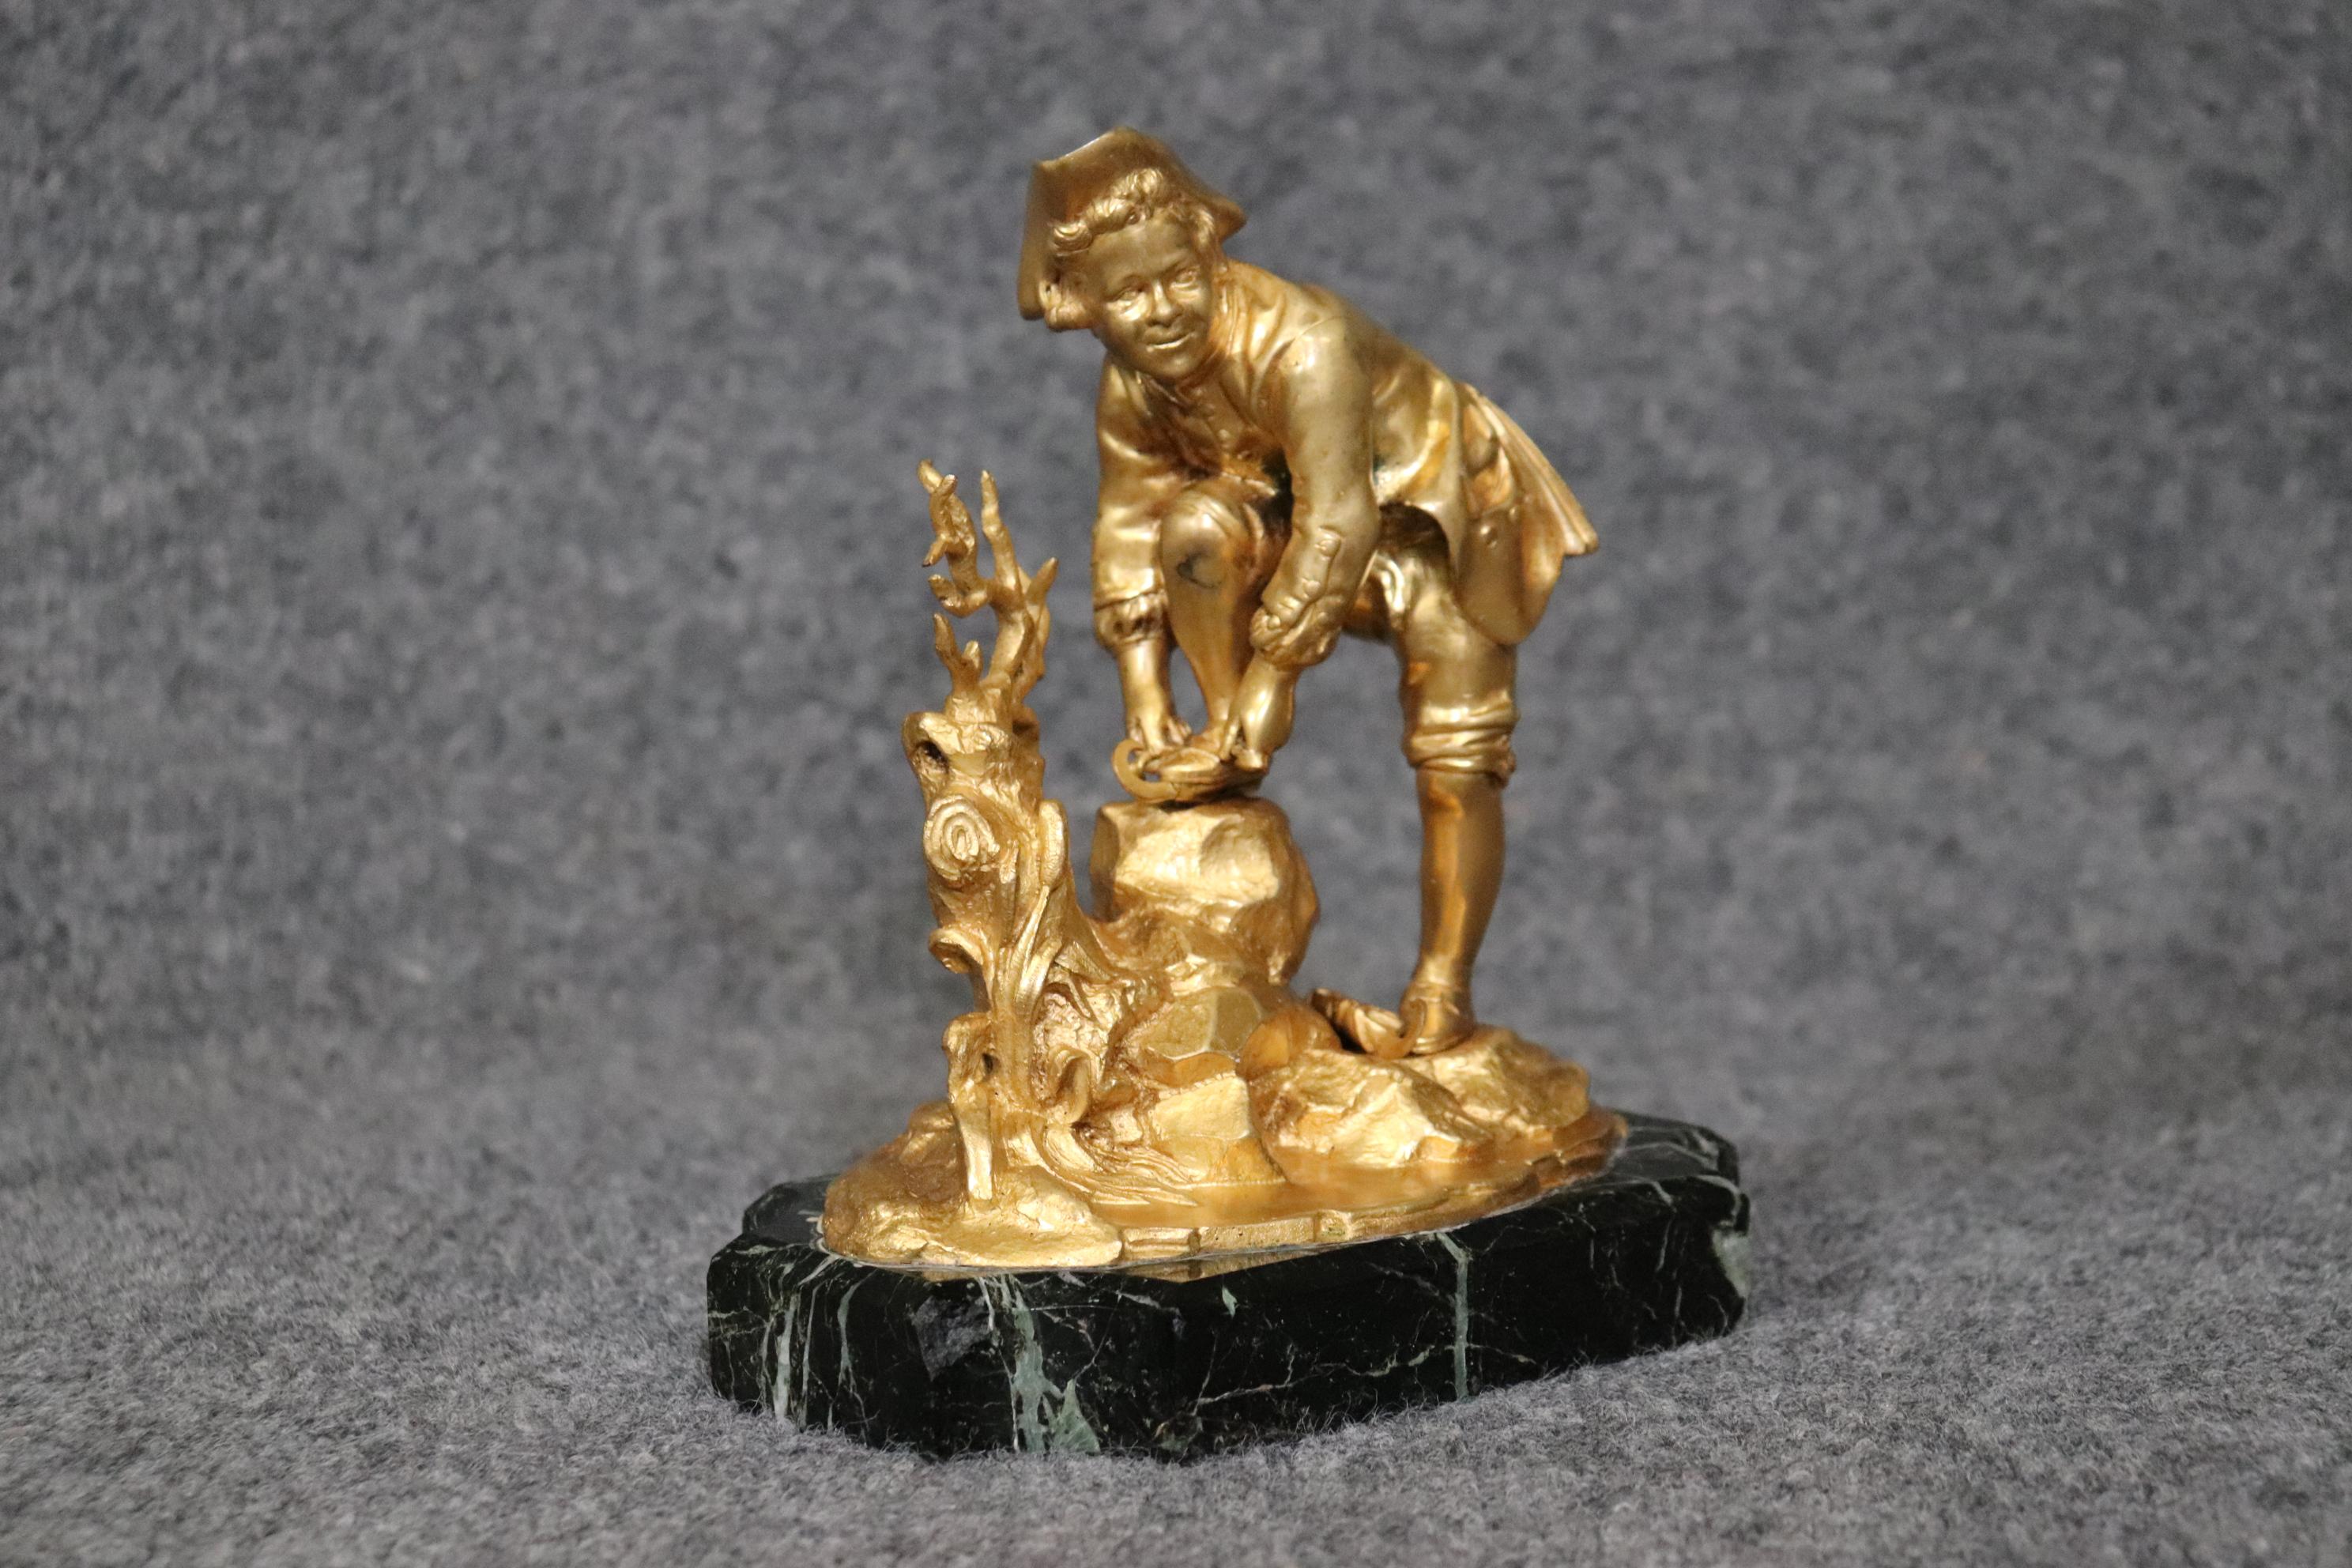 Dimensions- H : 12 1/2in W : 12in D : 4in 

Cette sculpture russe en bronze doré d'un garçon, datant de la fin du 19e siècle, est de la plus haute qualité ! Cette sculpture ancienne présente une belle base en marbre ainsi qu'une sculpture en bronze